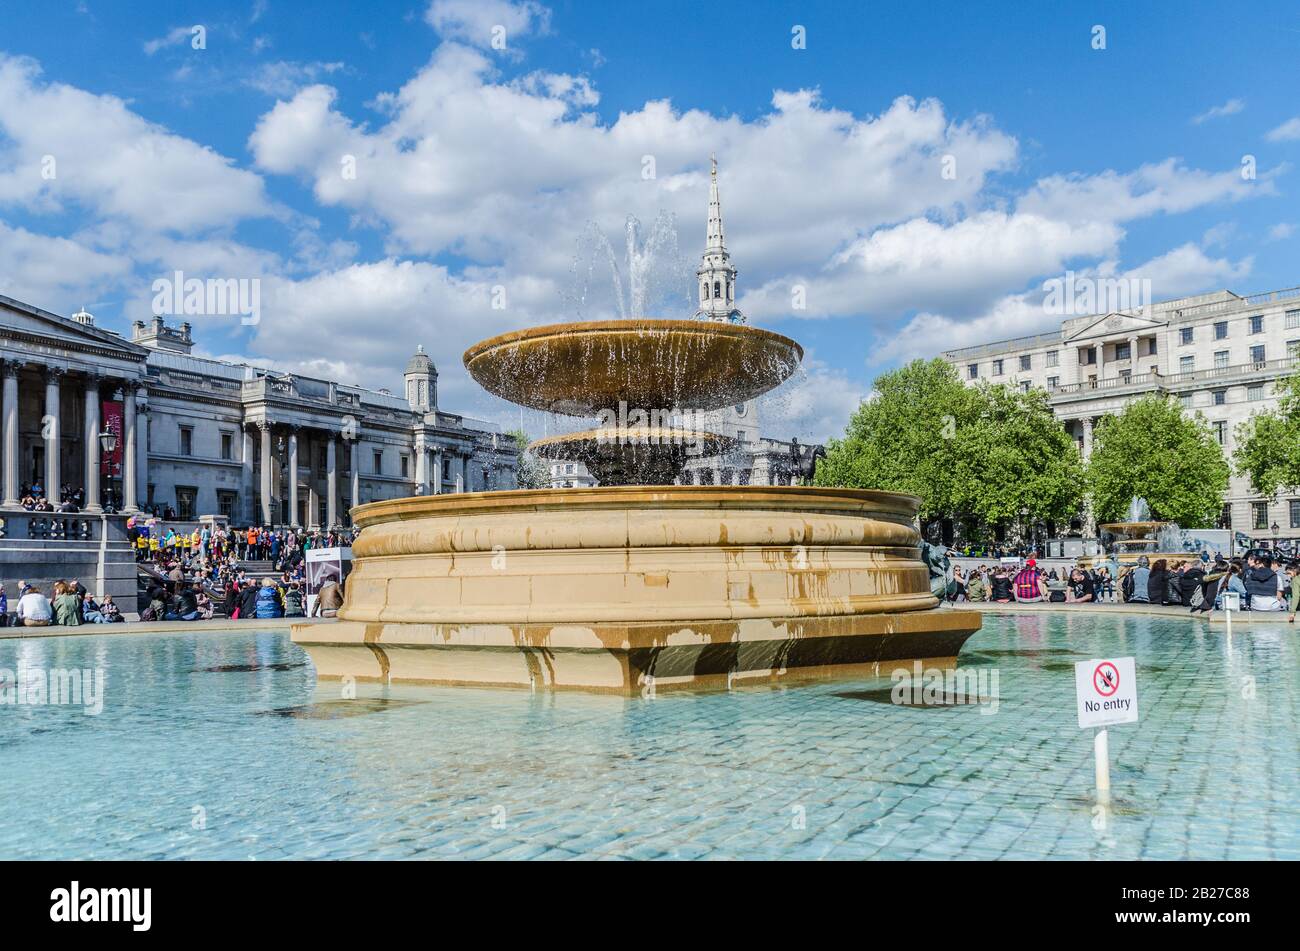 La maggior parte di Place trafalgar Square a Londra Regno Unito Foto Stock